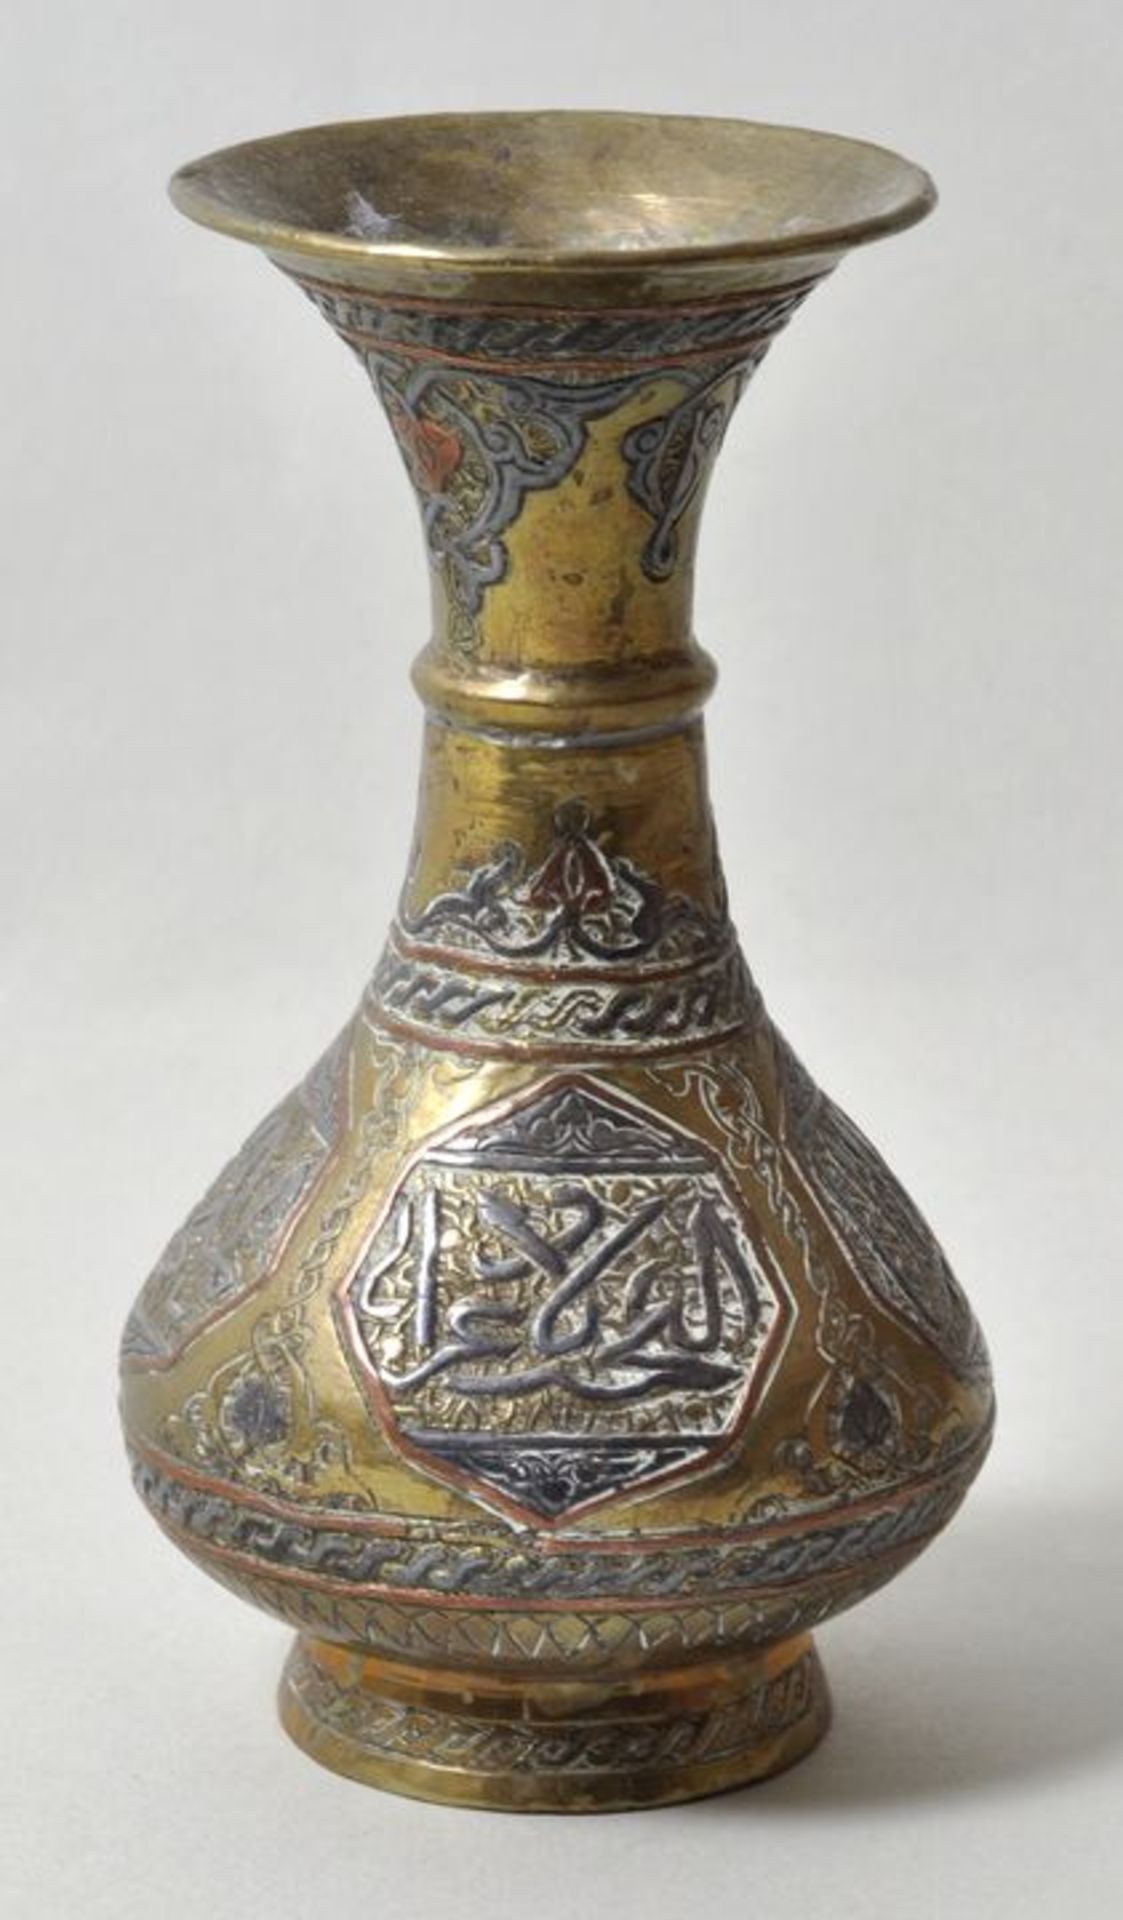 Persien. Kleine Vase.Messing, ornamental verziert, partiell farbig gefasst. Wohl 20. Jh. H. 13 cm.